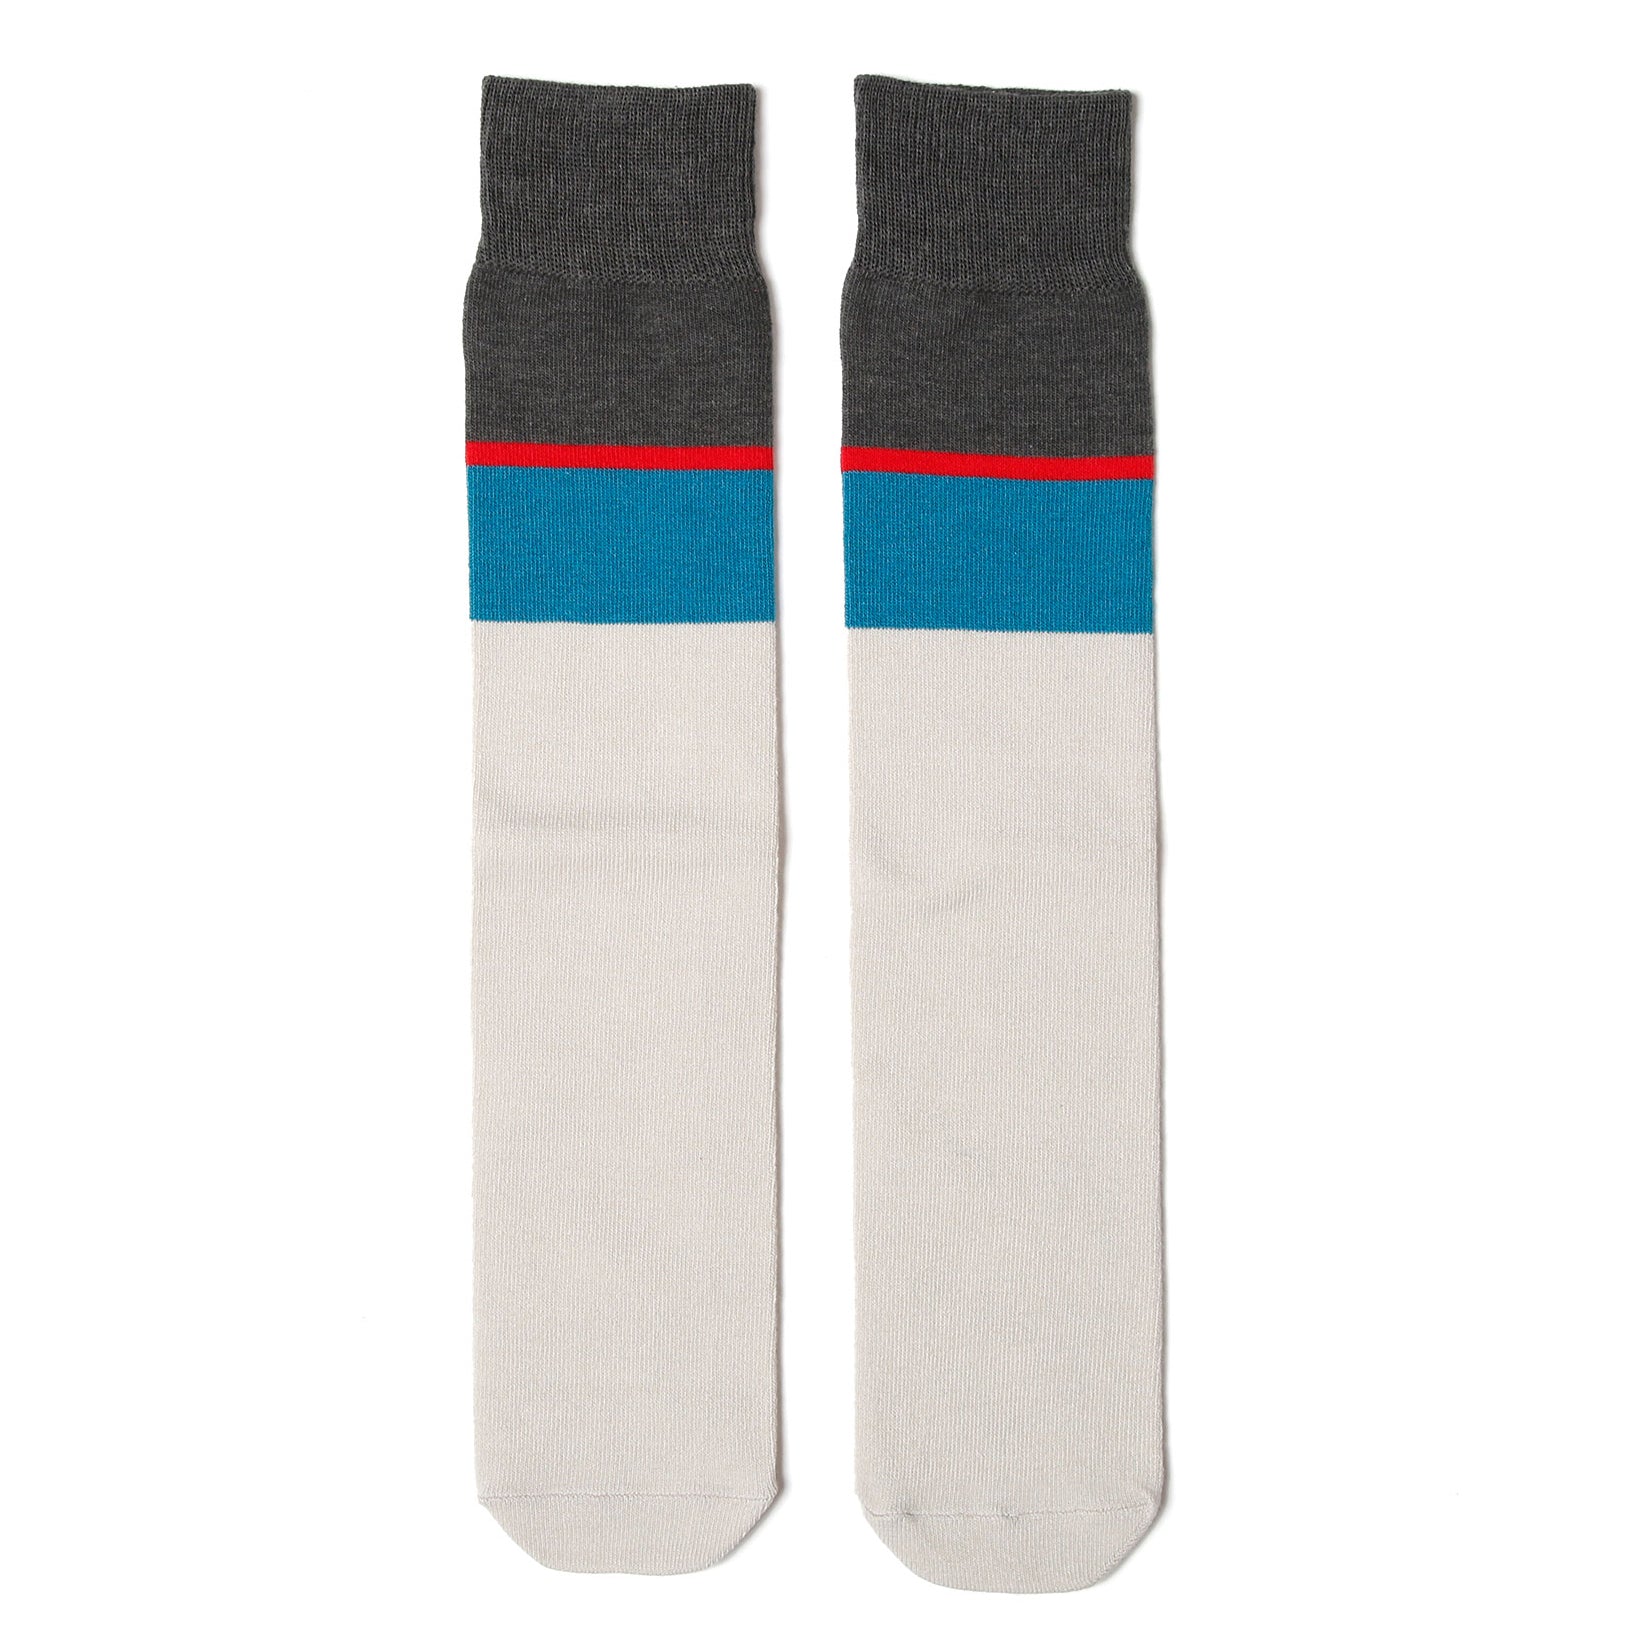 No:bsd23SS-36_b | Name:Coloring high socks | Color:Grey【BEDSIDEDRAMA_ベッドサイドドラマ】